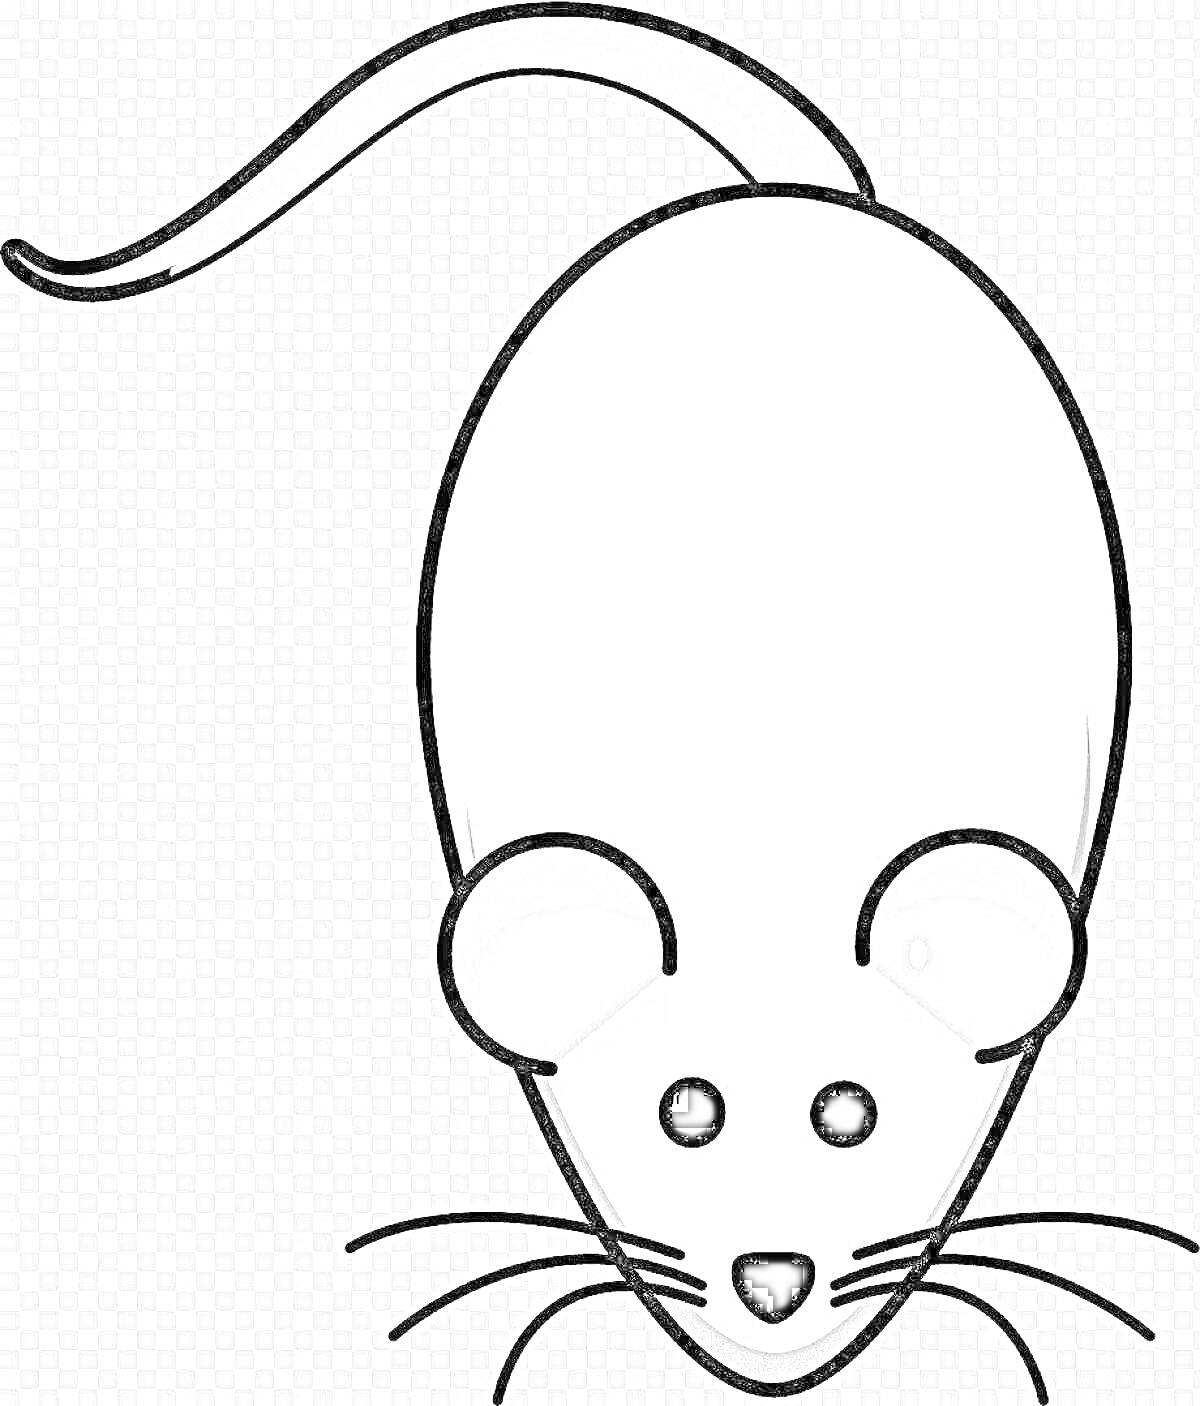 Раскраска мышка с длинным хвостом и крупной головой, черно-белый контур